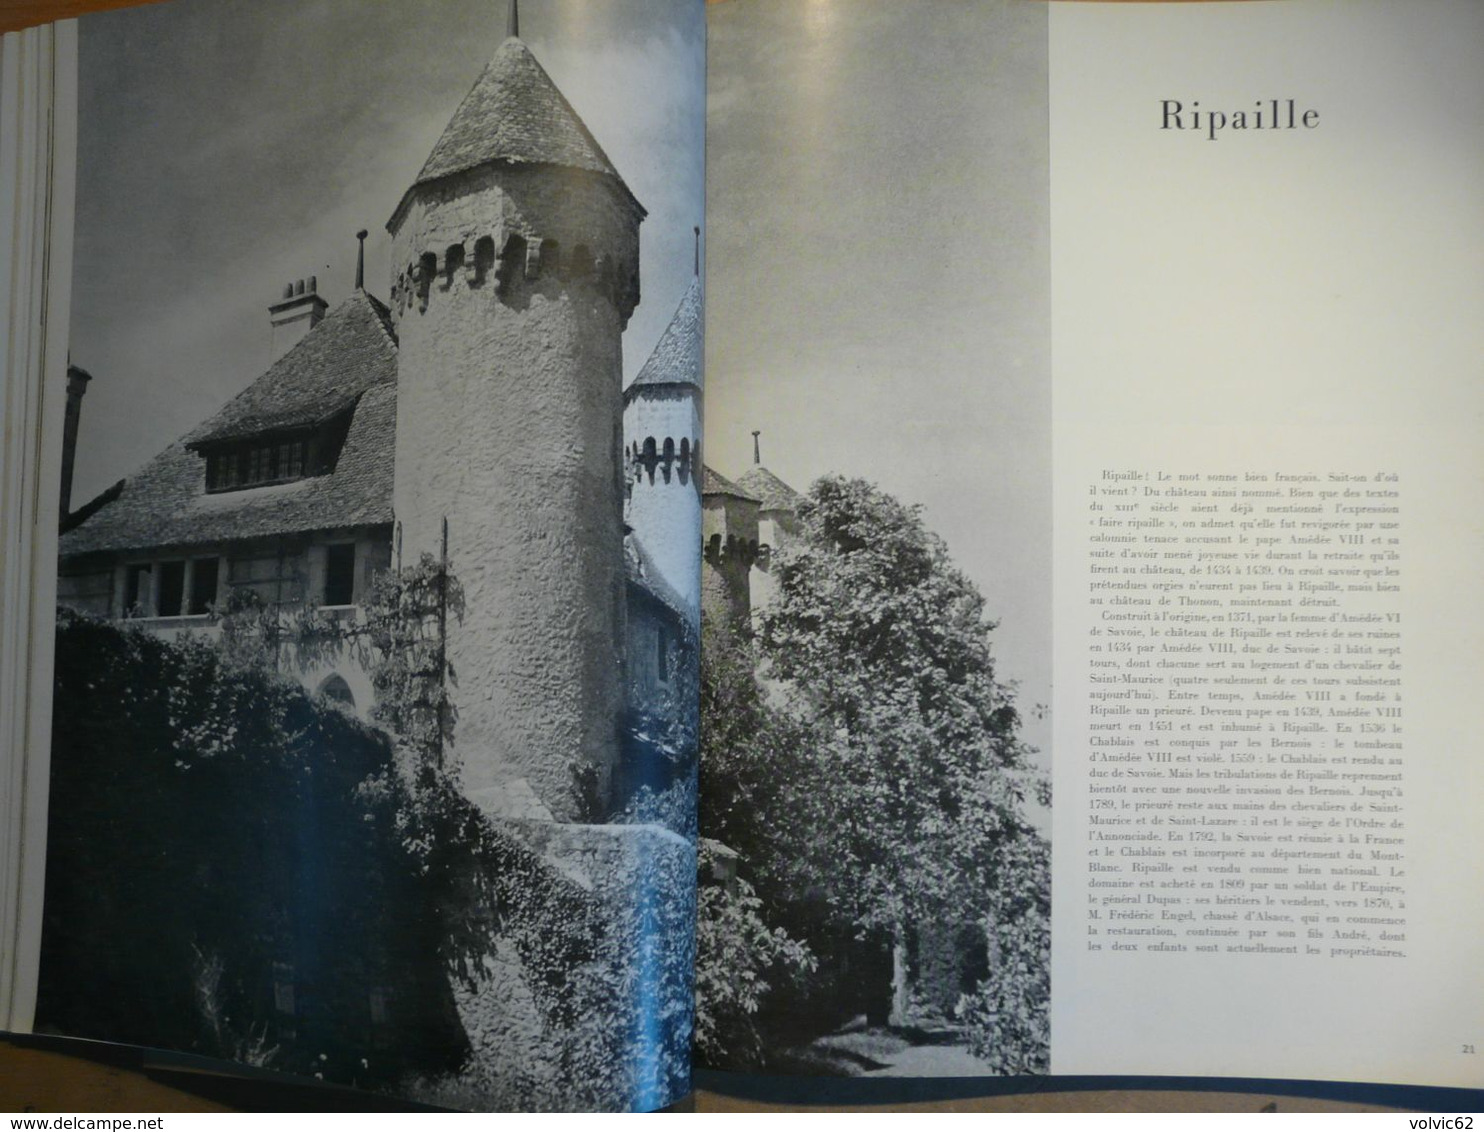 Plaisir de france 1951 annecy chateau chillon  coppet ripaille thonon vongy nernier thuyset larringes evian tourronde